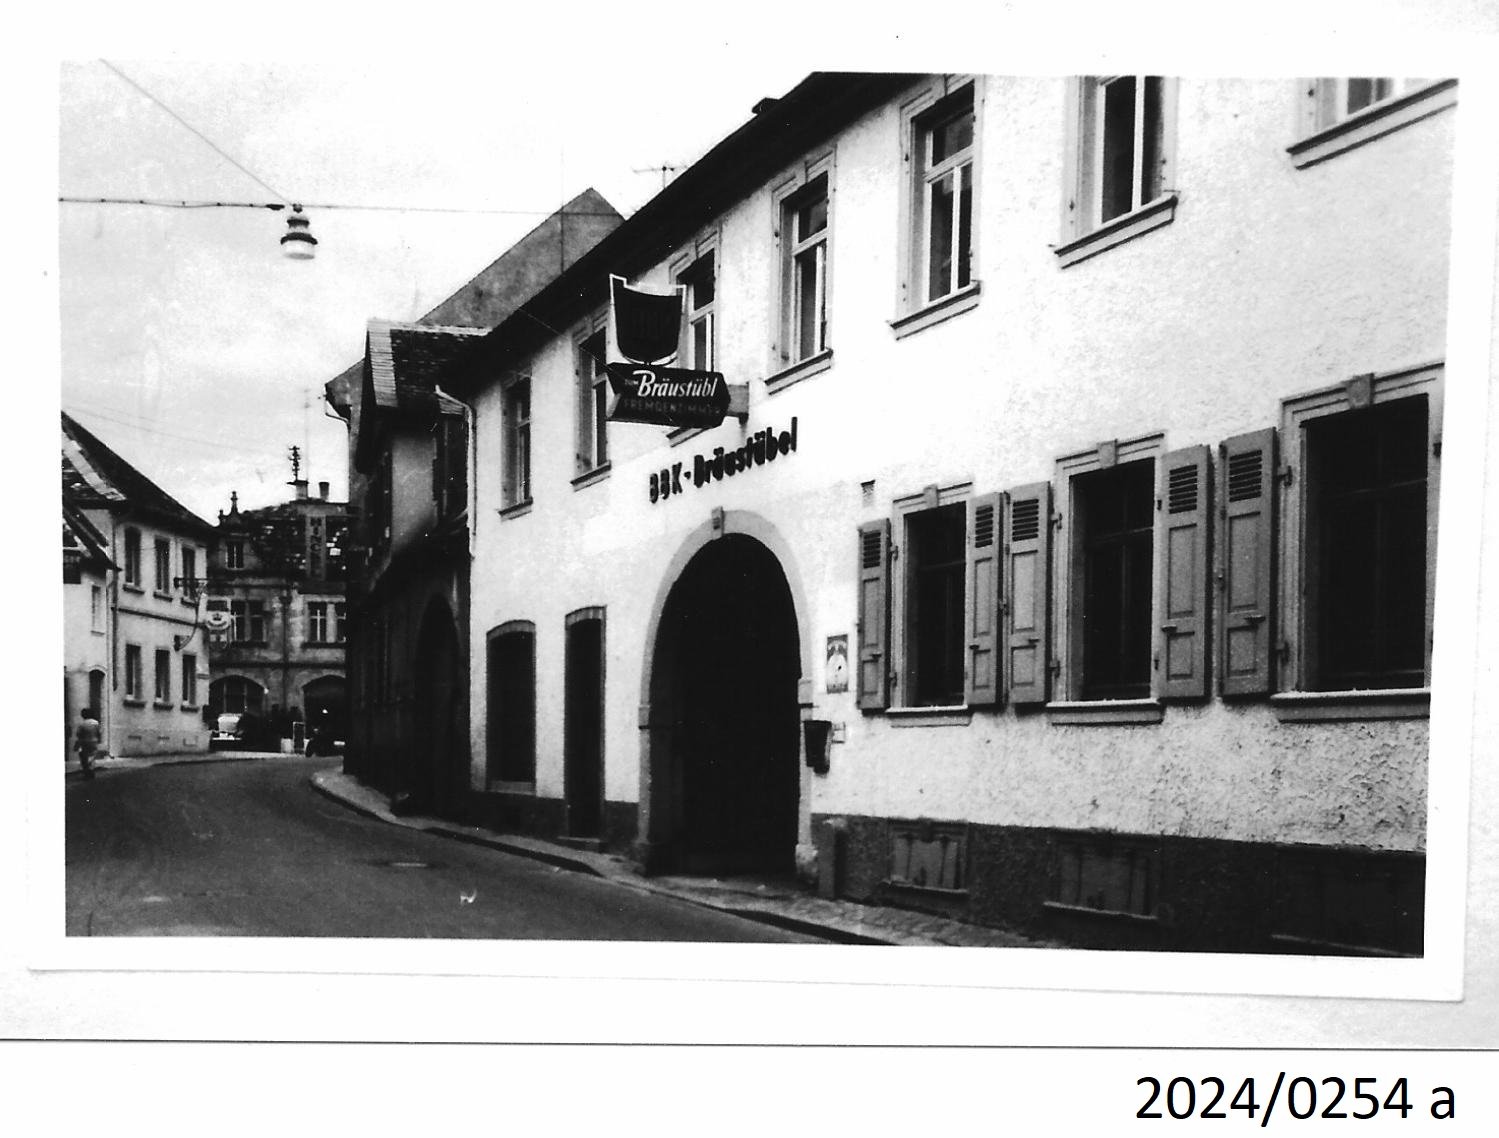 Bad Dürkheim, Blick in die Kaiserslauterer Straße von Westen, 1960er Jahre (Stadtmuseum Bad Dürkheim im Kulturzentrum Haus Catoir CC BY-NC-SA)